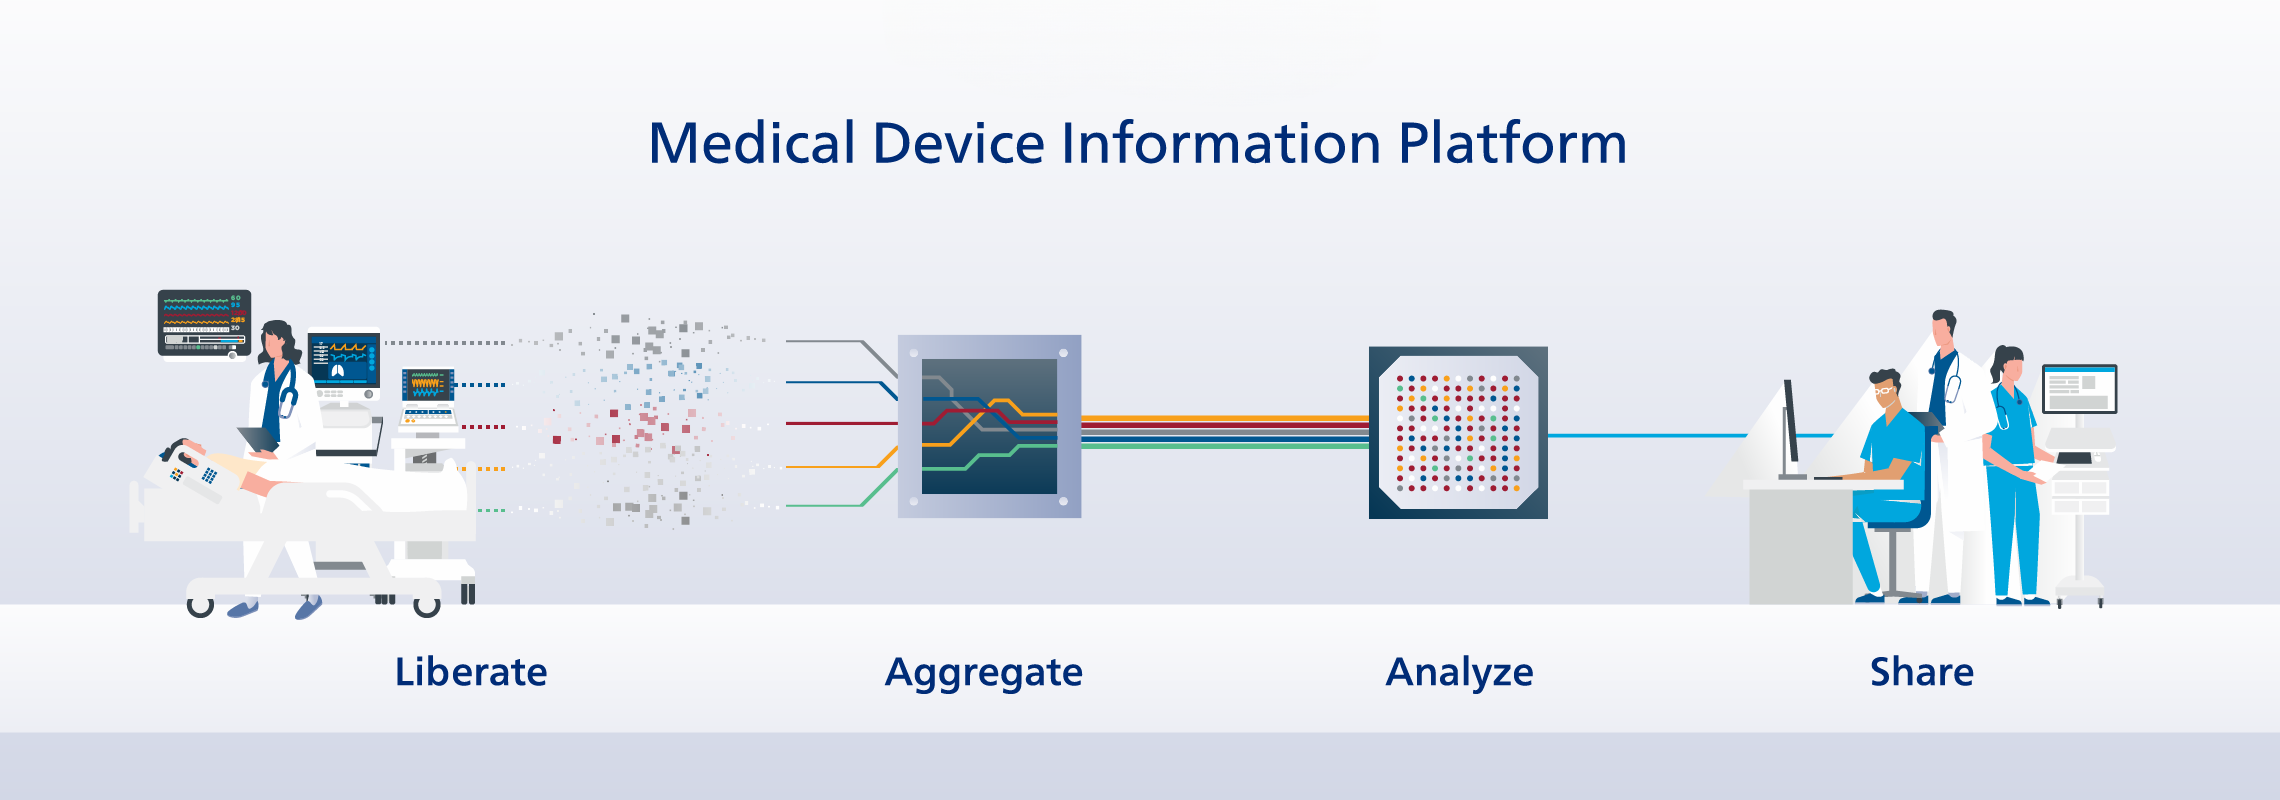 medical device information platform graphic